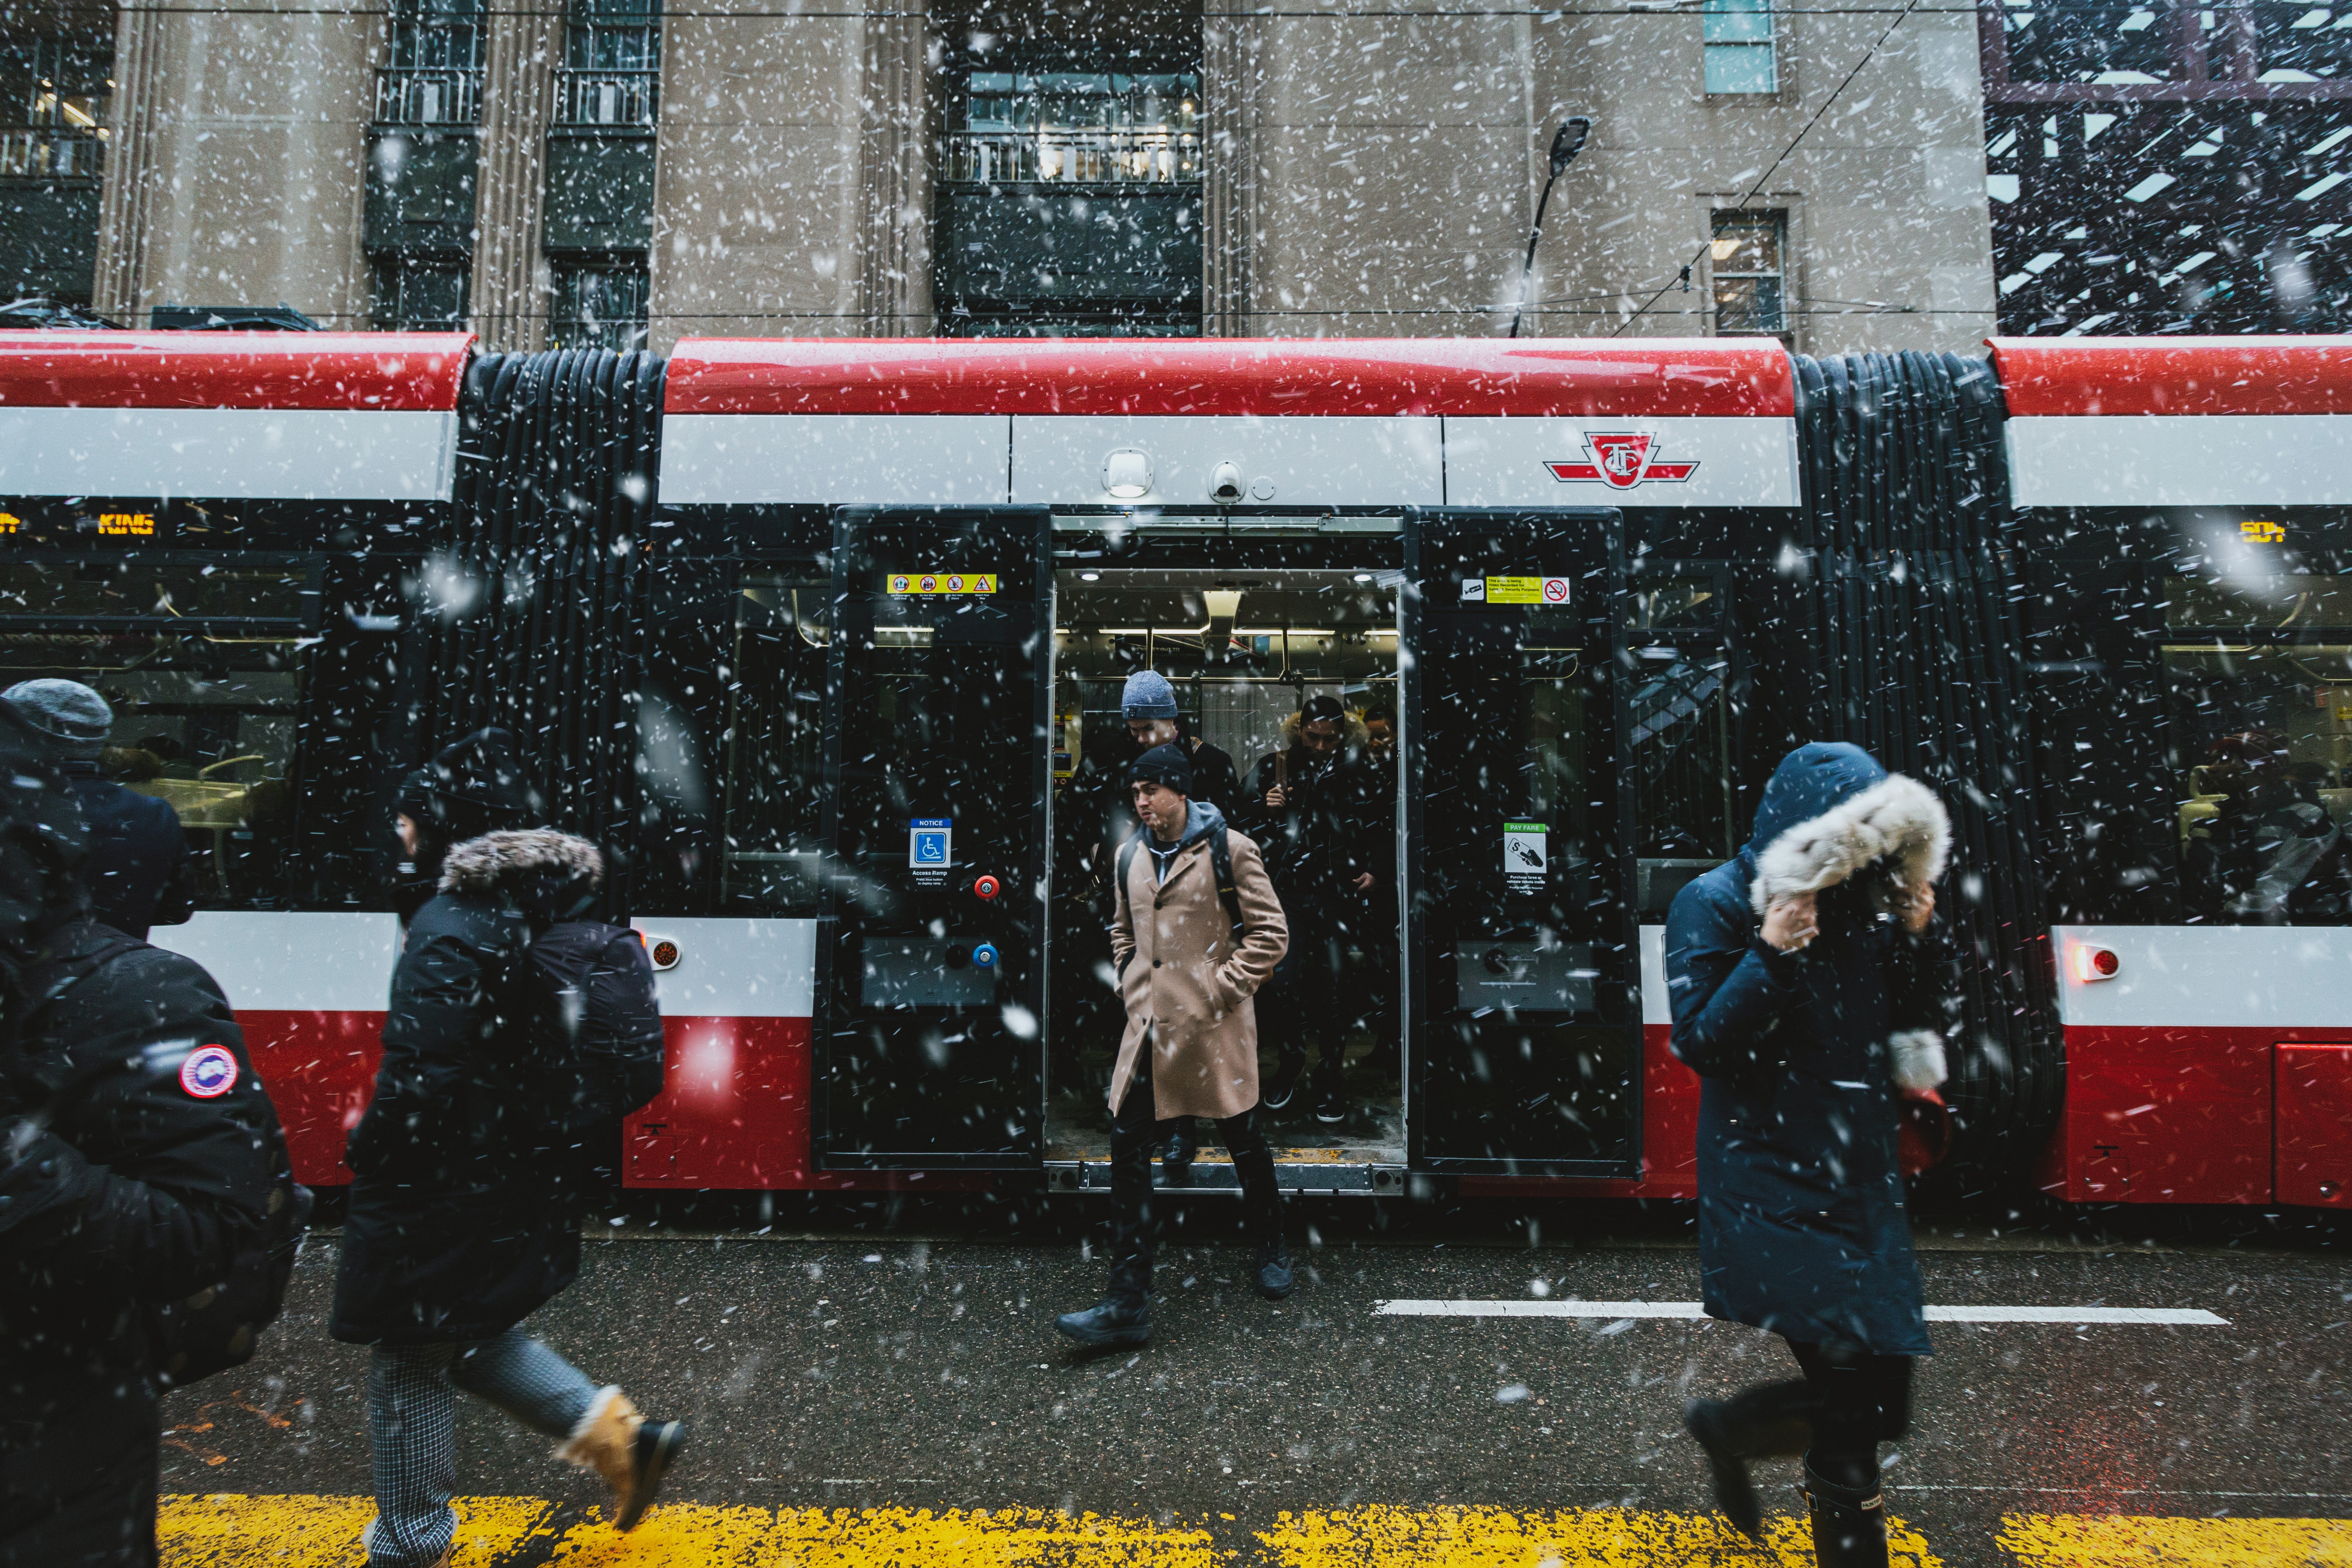 Personas caminando cerca del tranvía. Toronto, Ontario. (Cortesía de Pexels)